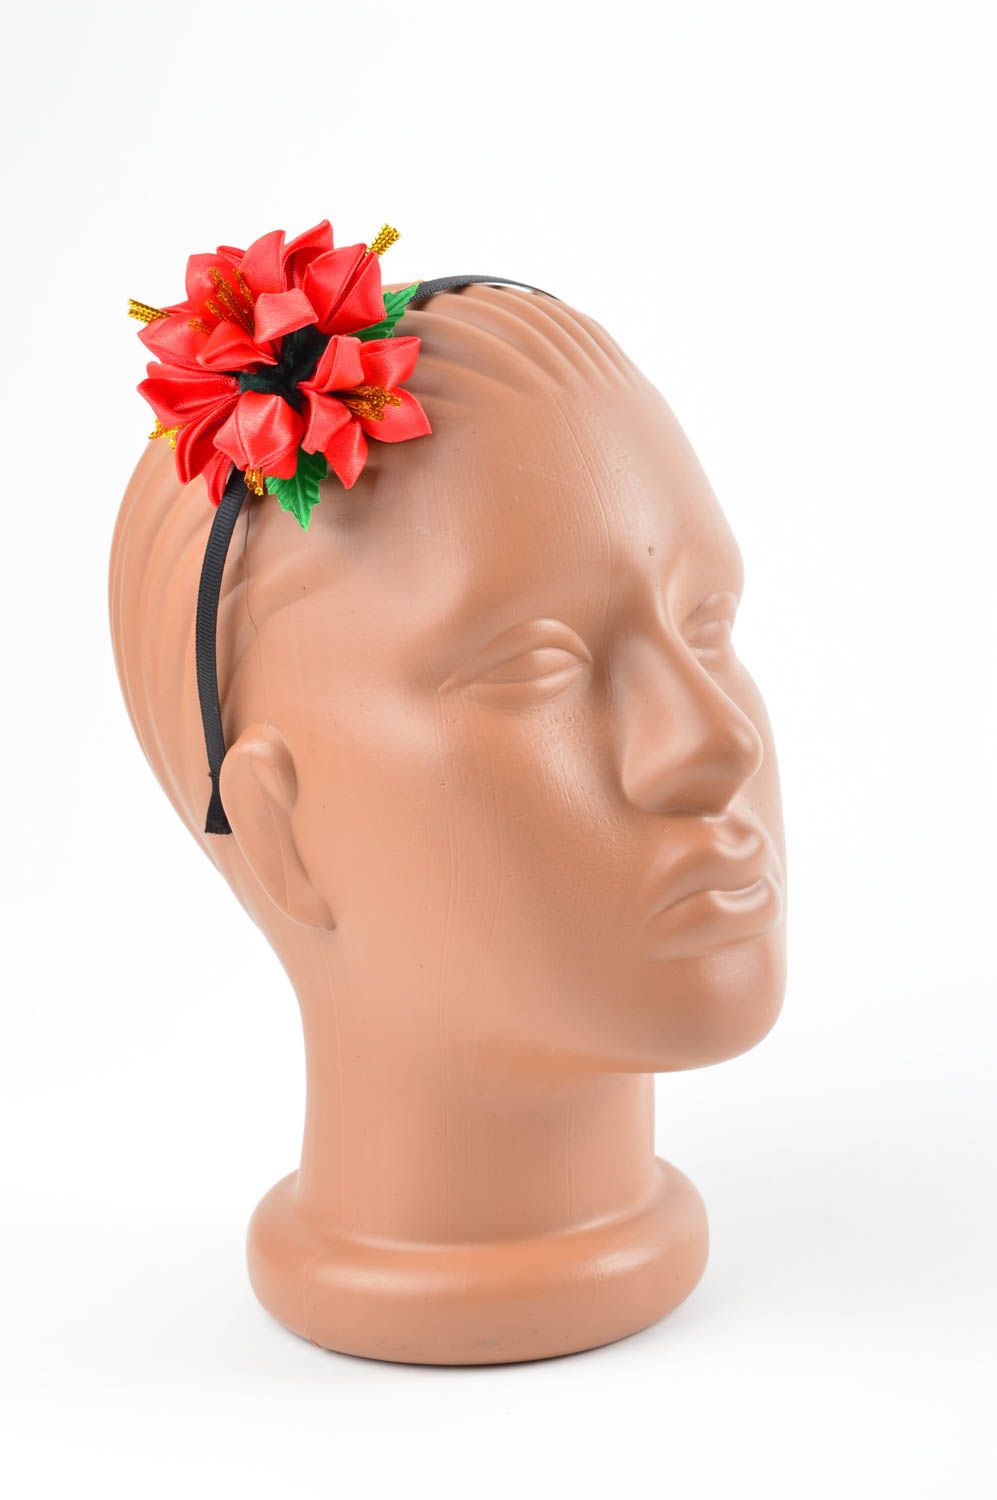 Аксессуар для волос хэнд мэйд обруч на голову с цветком женский аксессуар фото 4